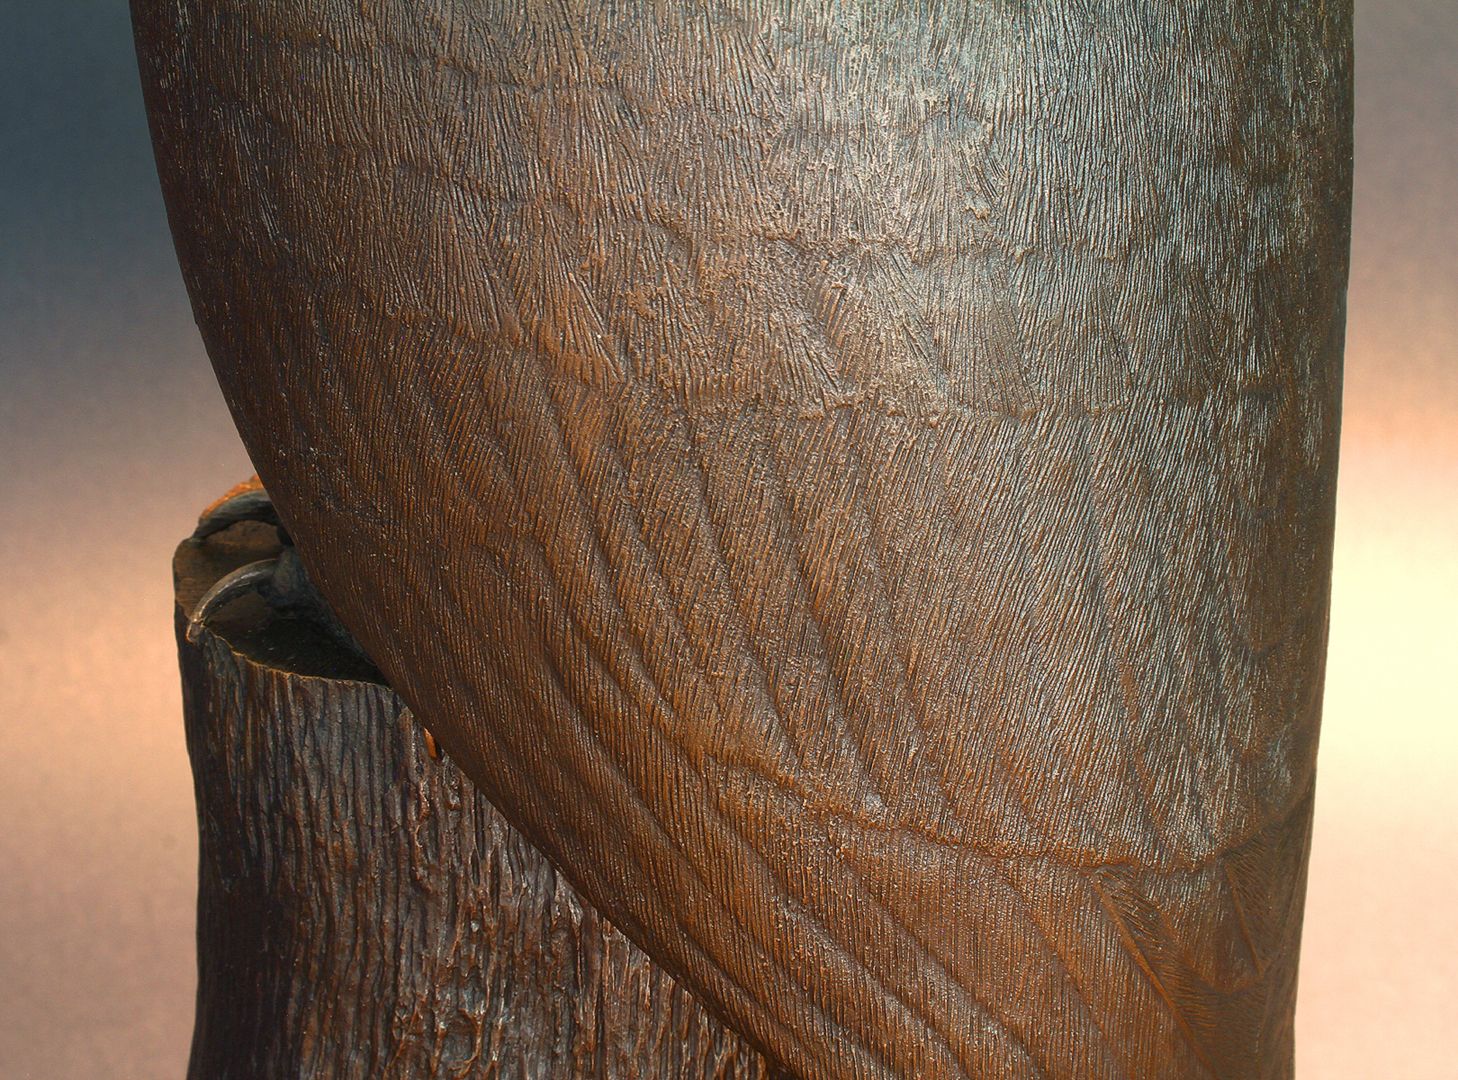 Waldkauz Gefieder, Detail